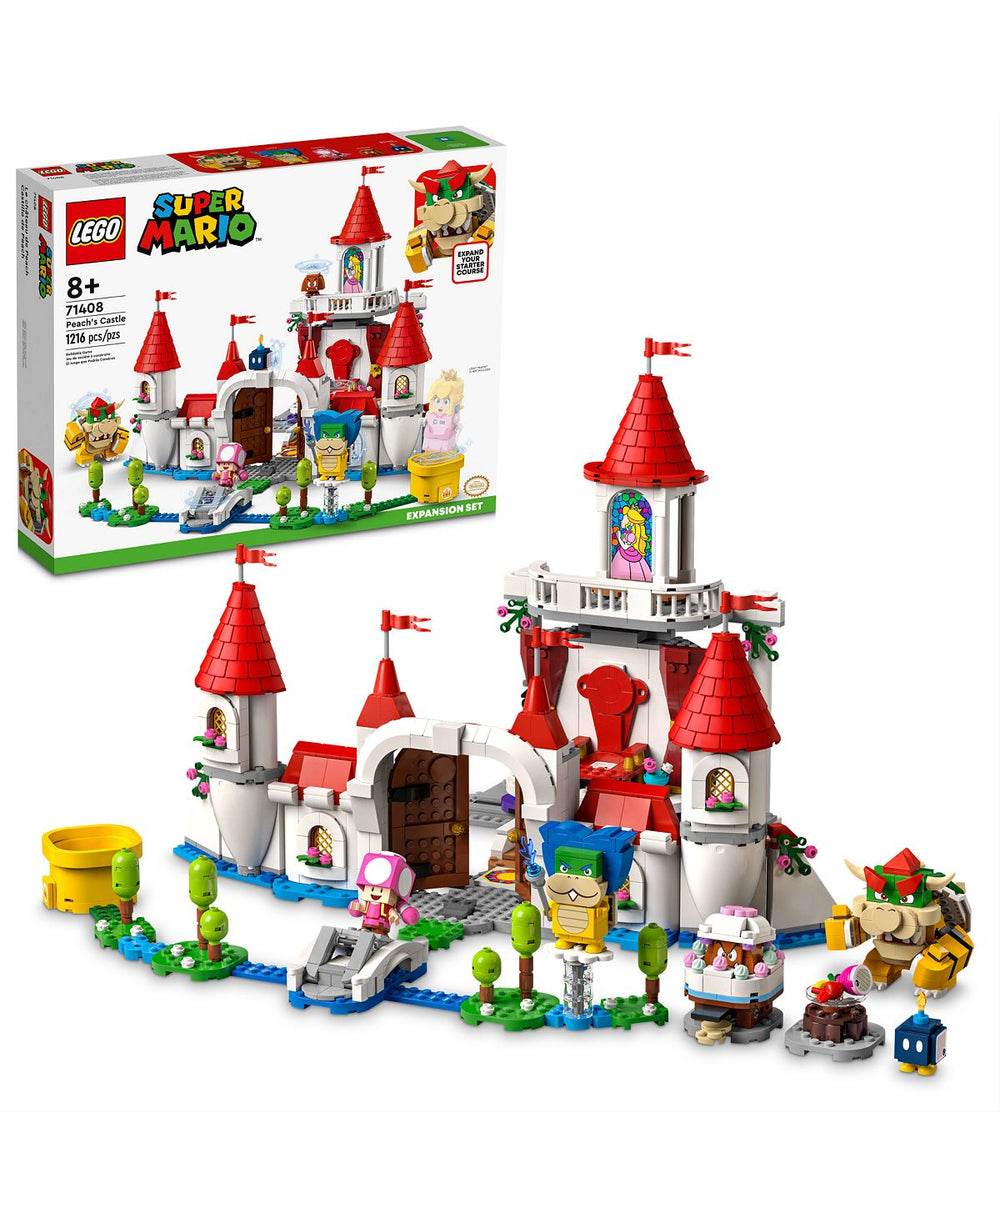 LEGO Super Mario Peach's Castle Expansion Set - 1216 Piece Building Kit